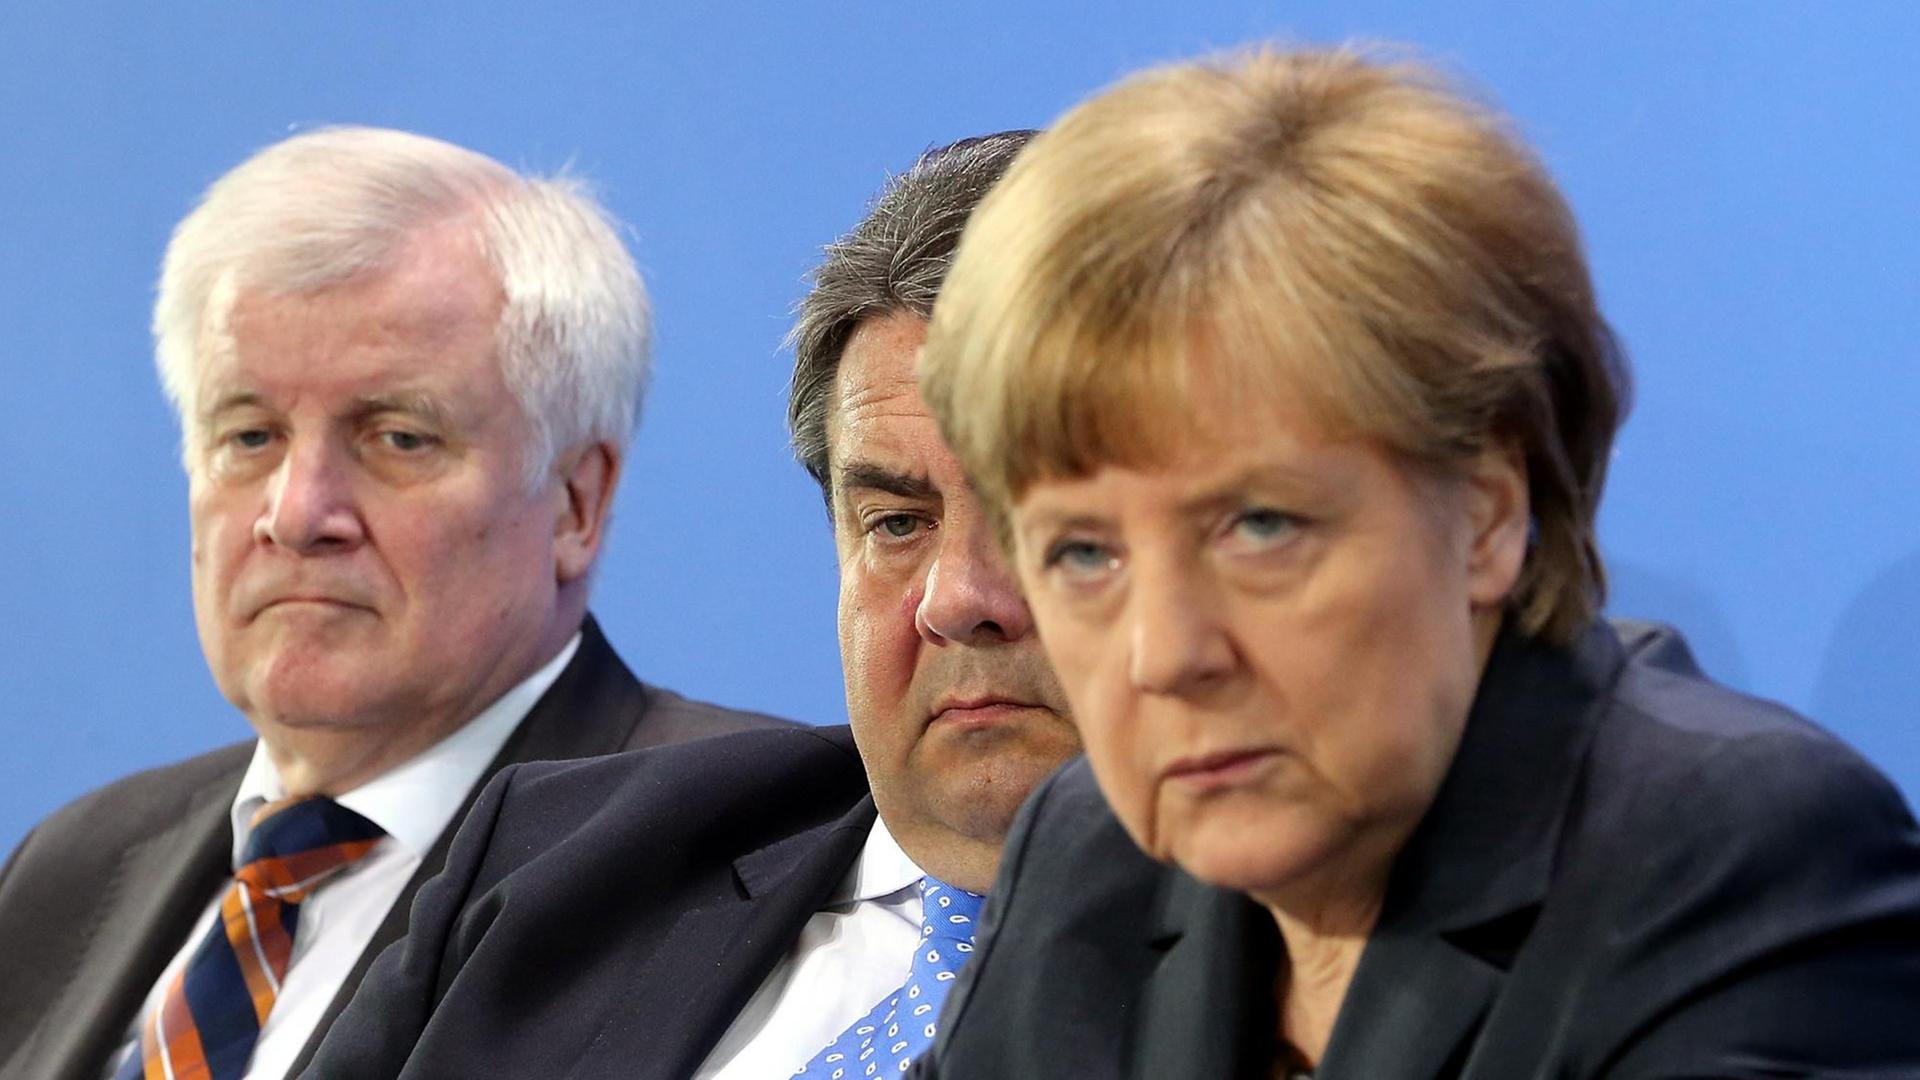 Bayerns Regierungschef Horst Seehofer mit SPD-Chef Sigmar Gabriel und CDU-Chefin und Kanzlern Angela Merkel bei einer Pressekonferenz.